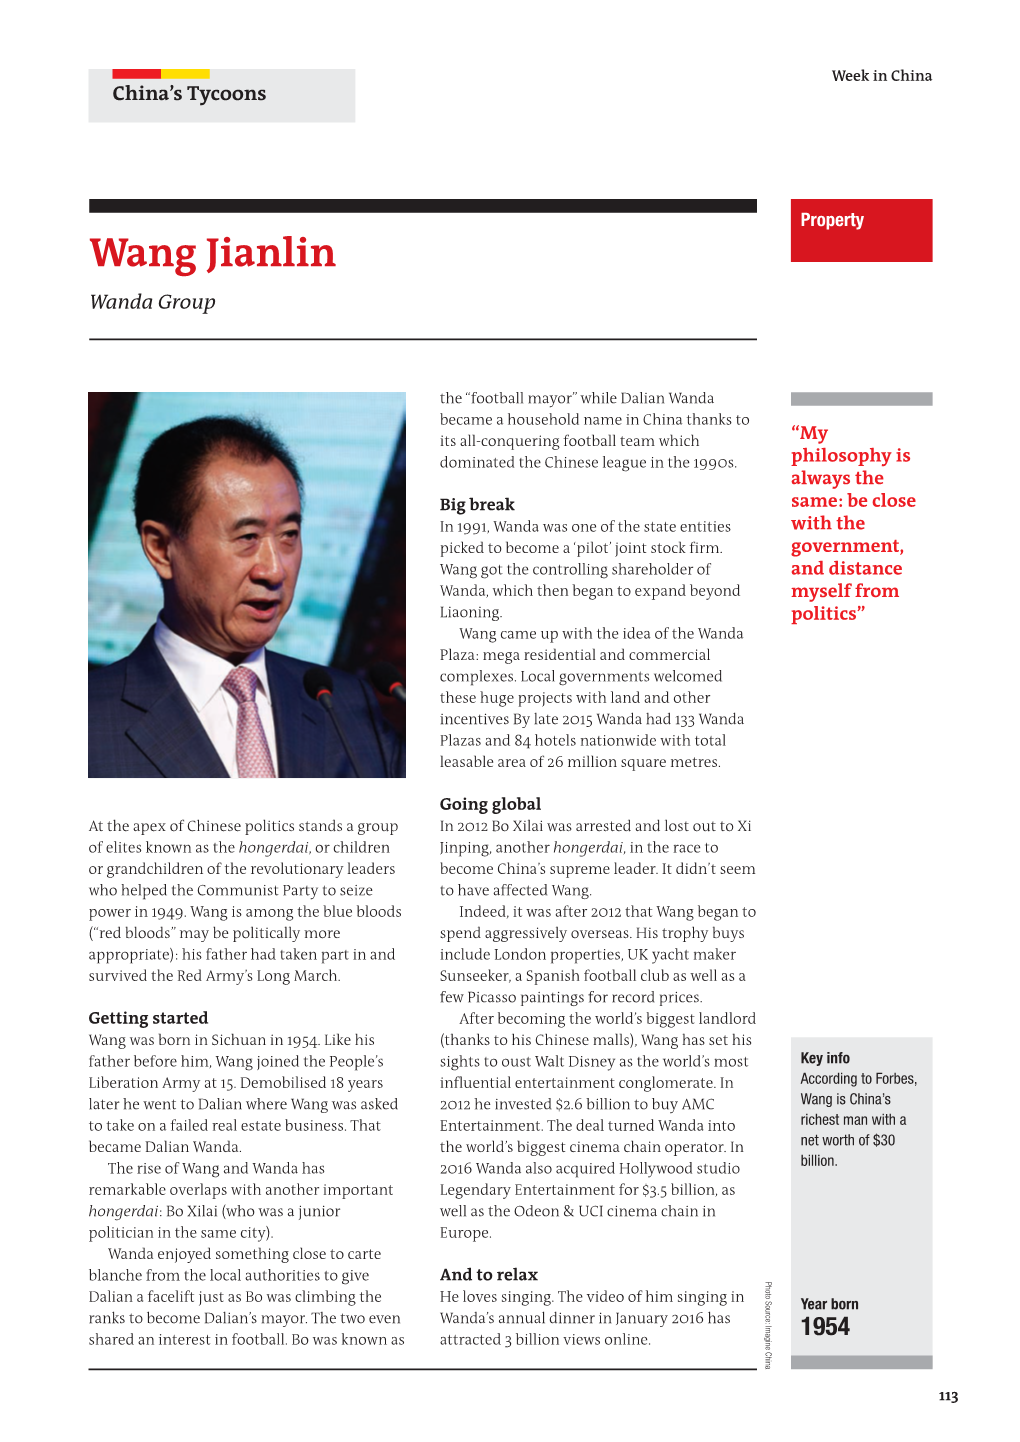 Wang Jianlin Wanda Group